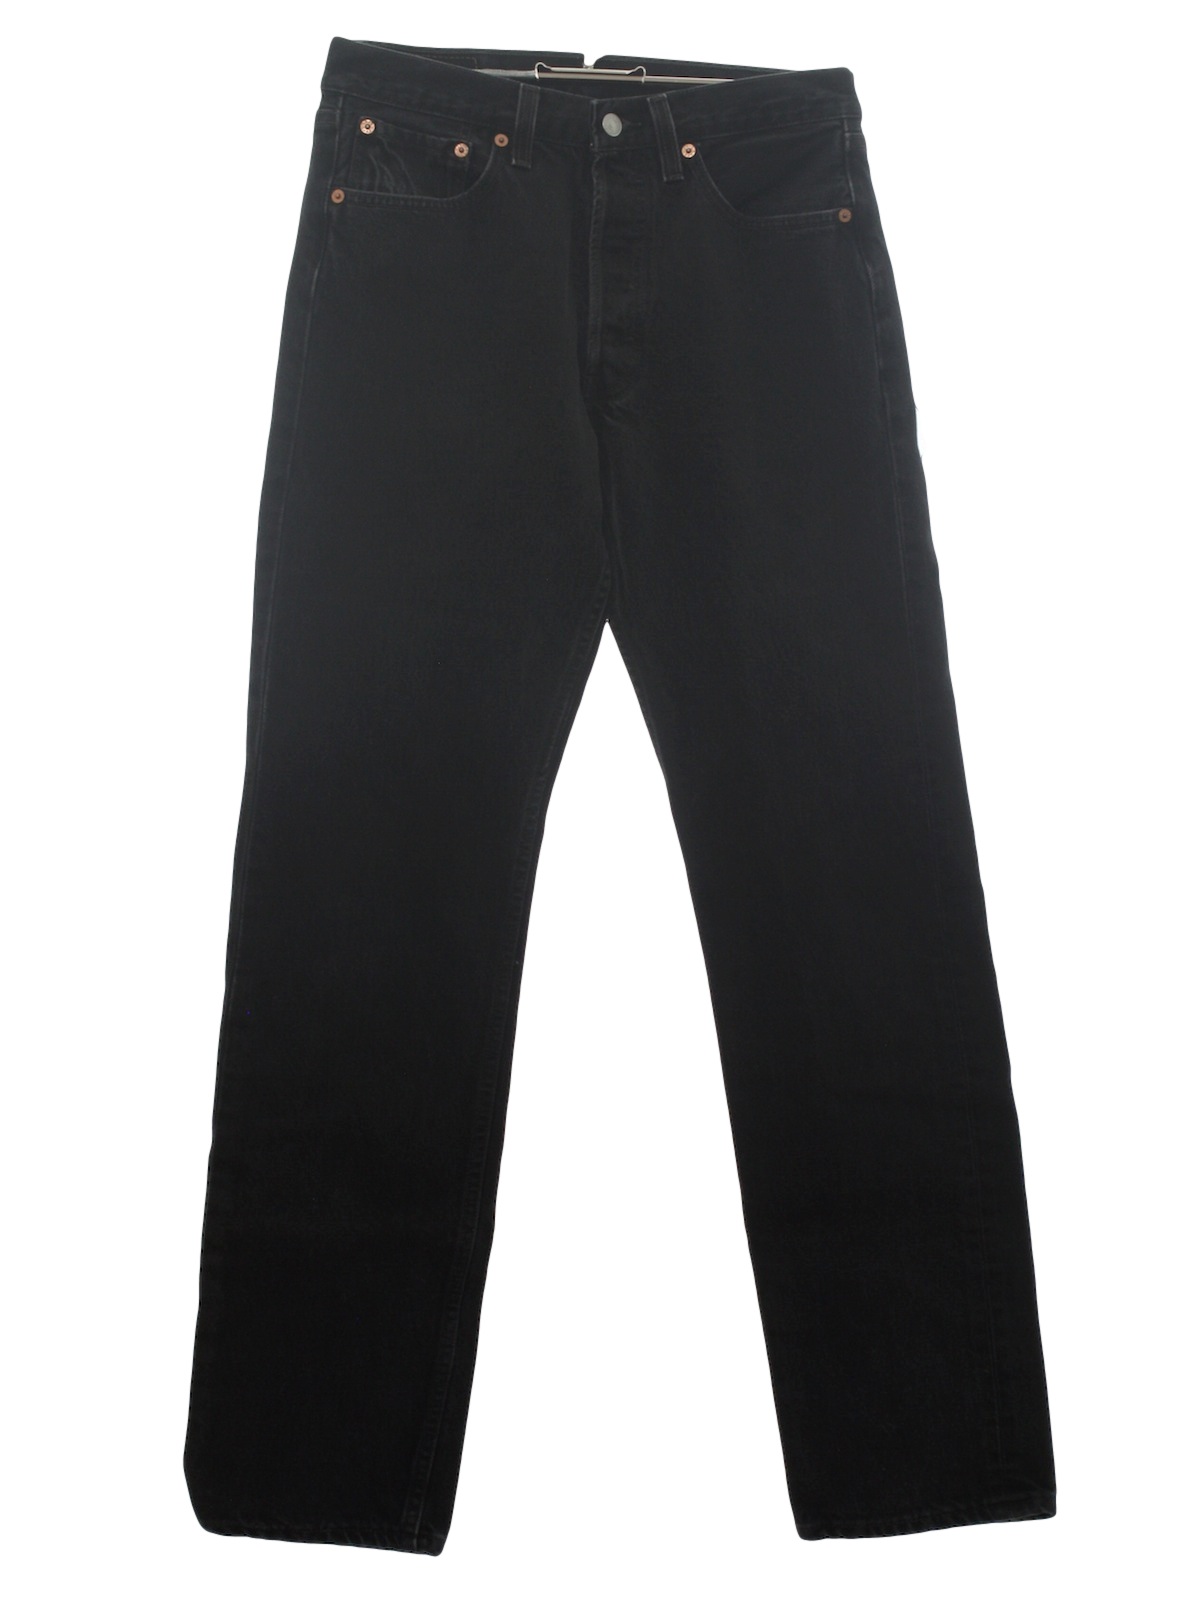 80s Pants (Levis): 80s -Levis- Mens black cotton denim jeans pants with ...